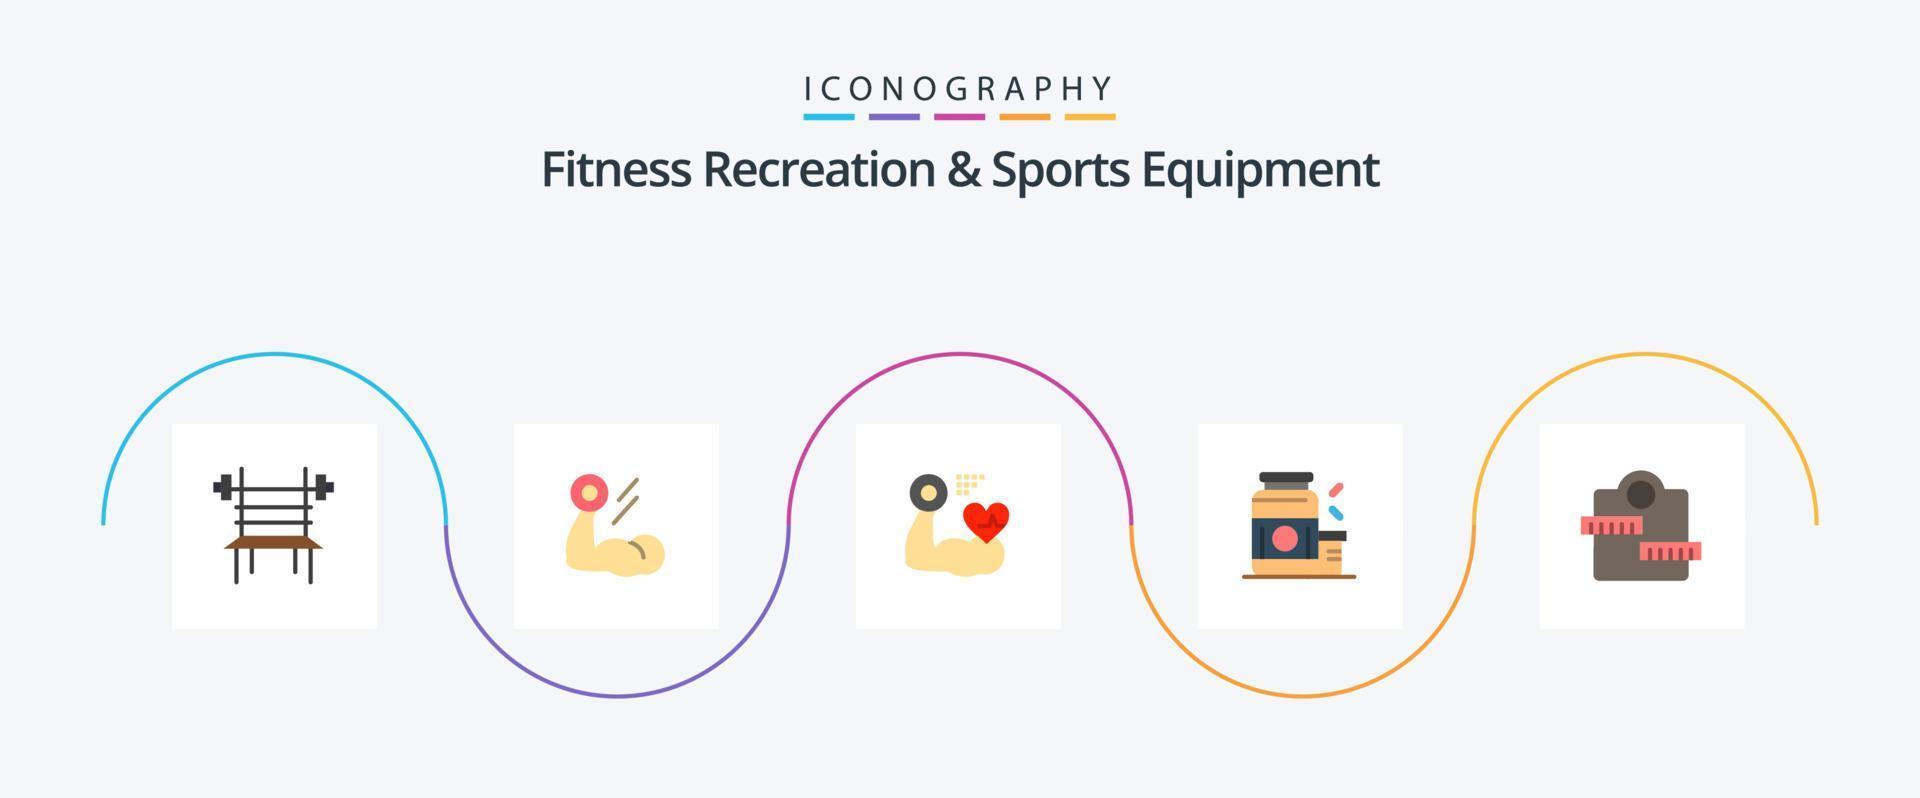 Recreação fitness e equipamento esportivo Flat 5 Icon Pack, incluindo esportes. ganhador. músculo. musculação. coração vetor